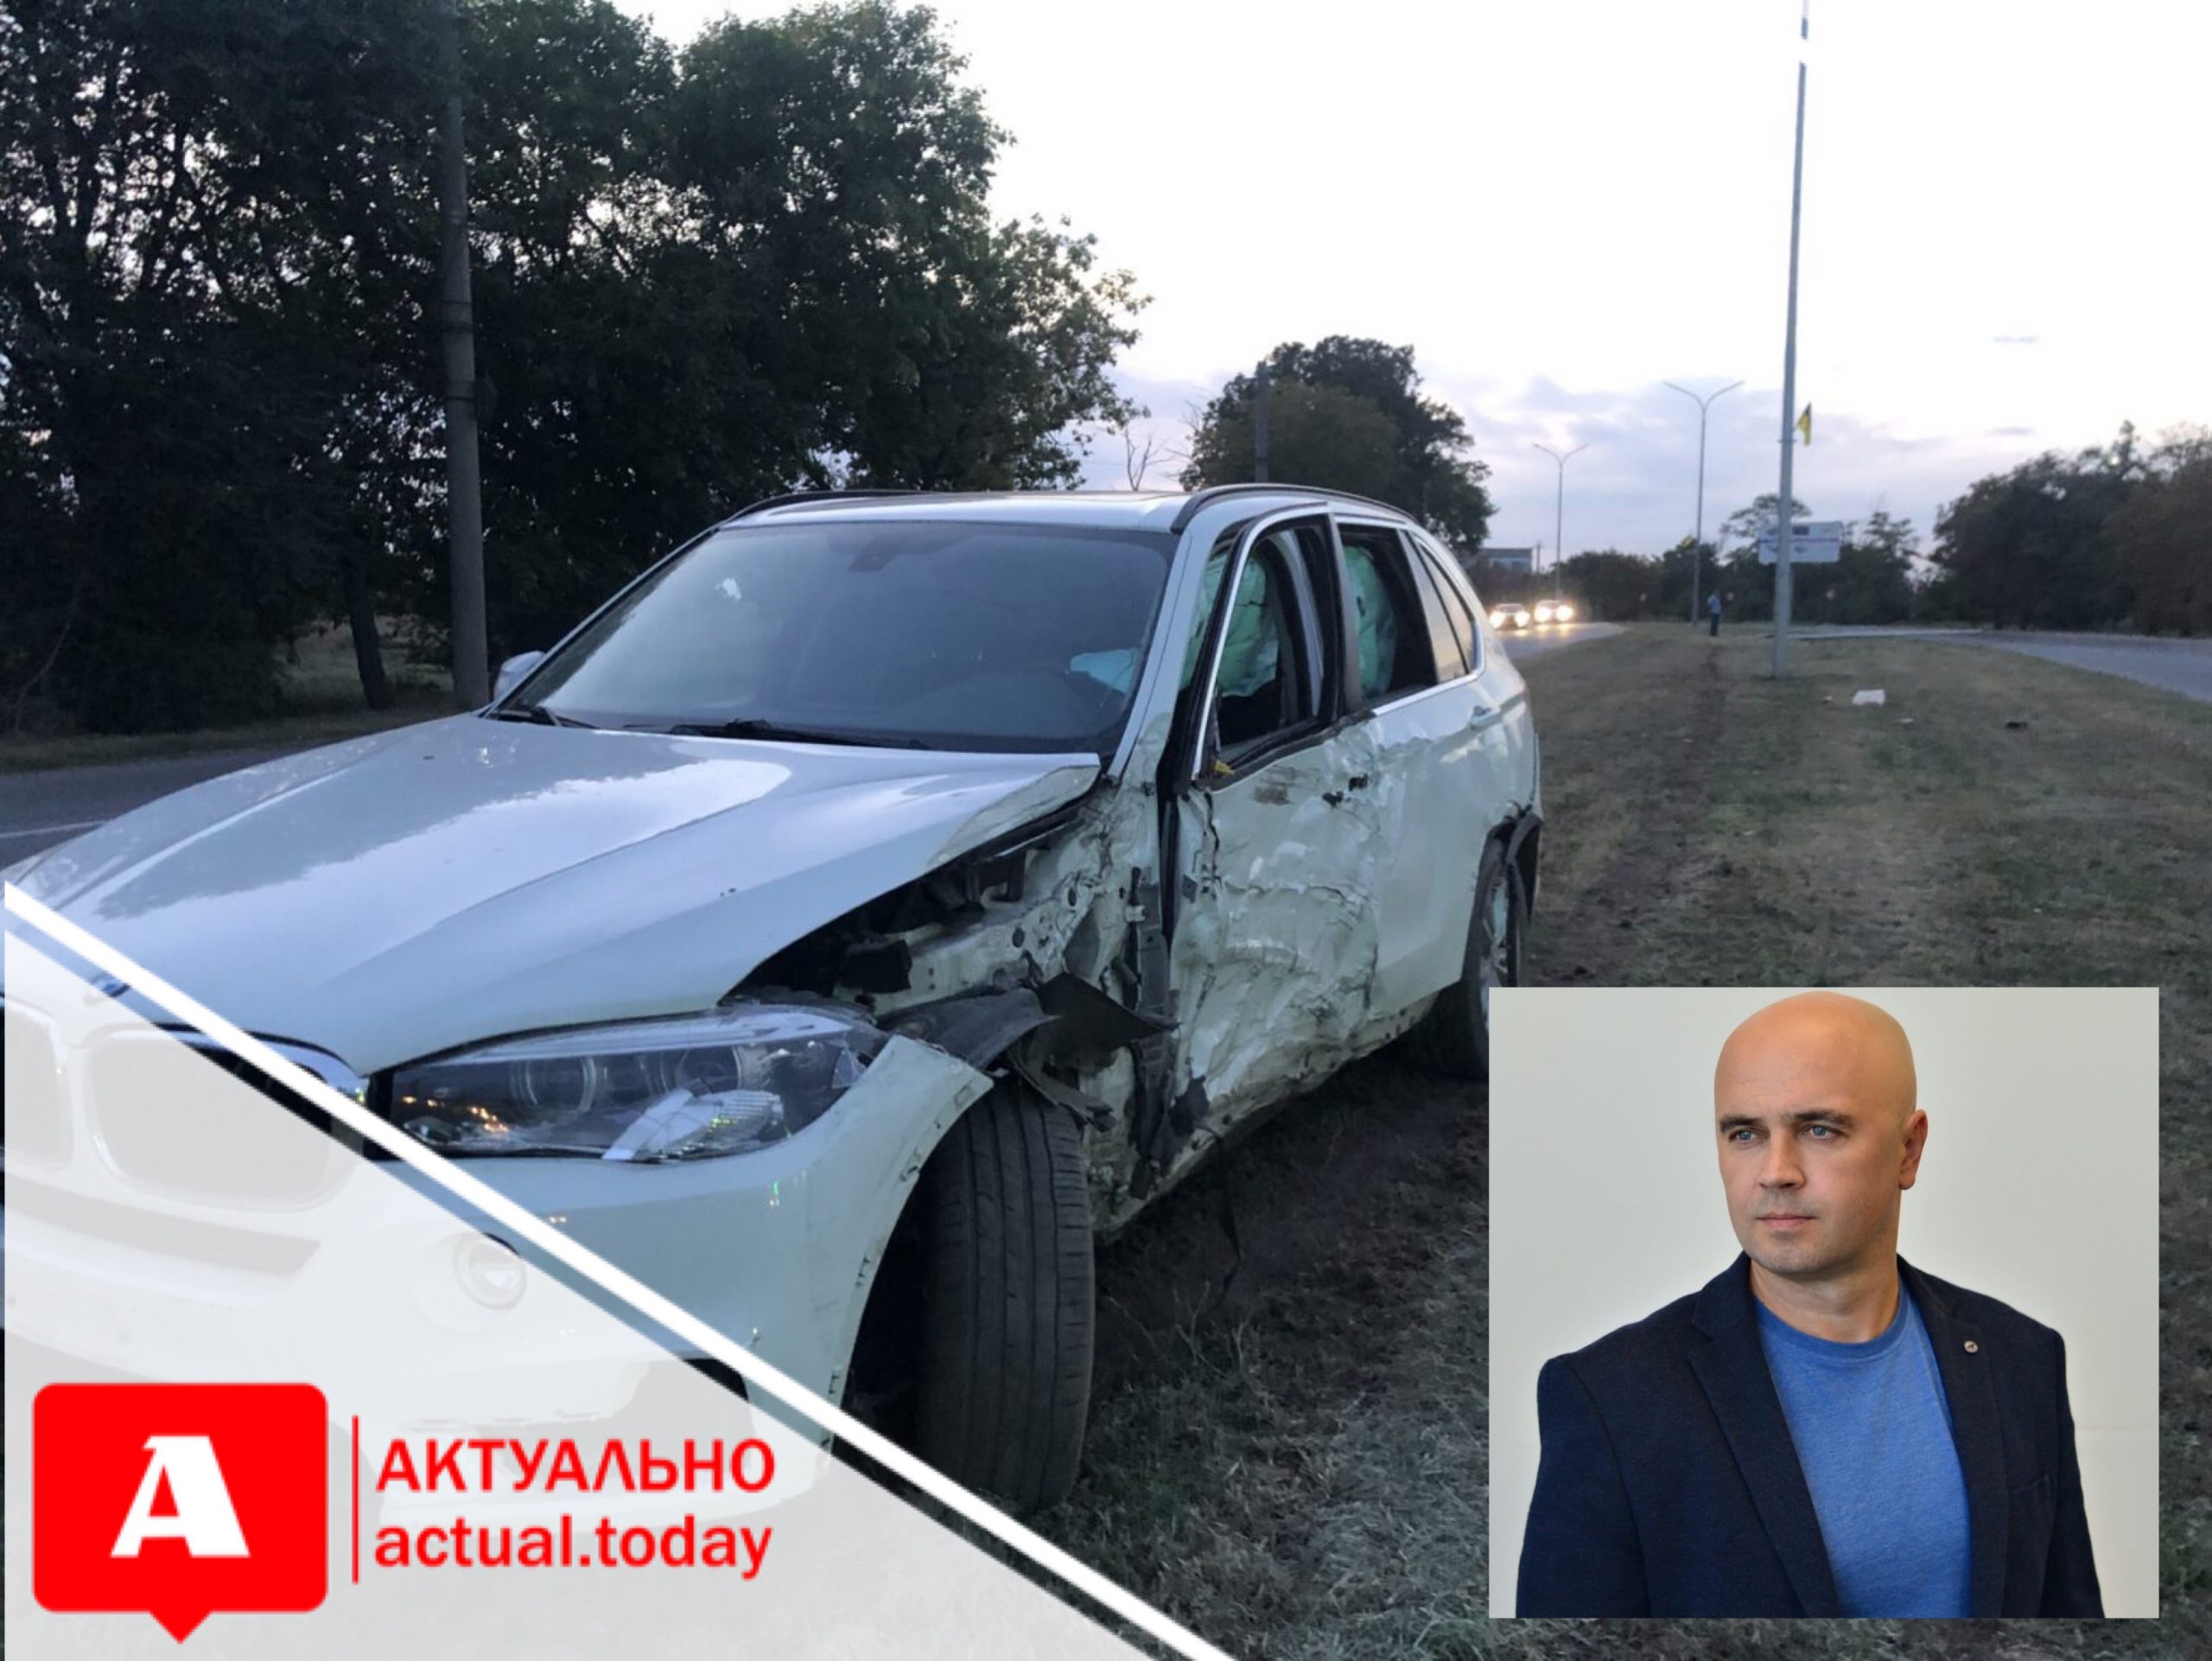 Депутат, сбивший в Бердянске пешехода, принял решение сложить депутатские полномочия